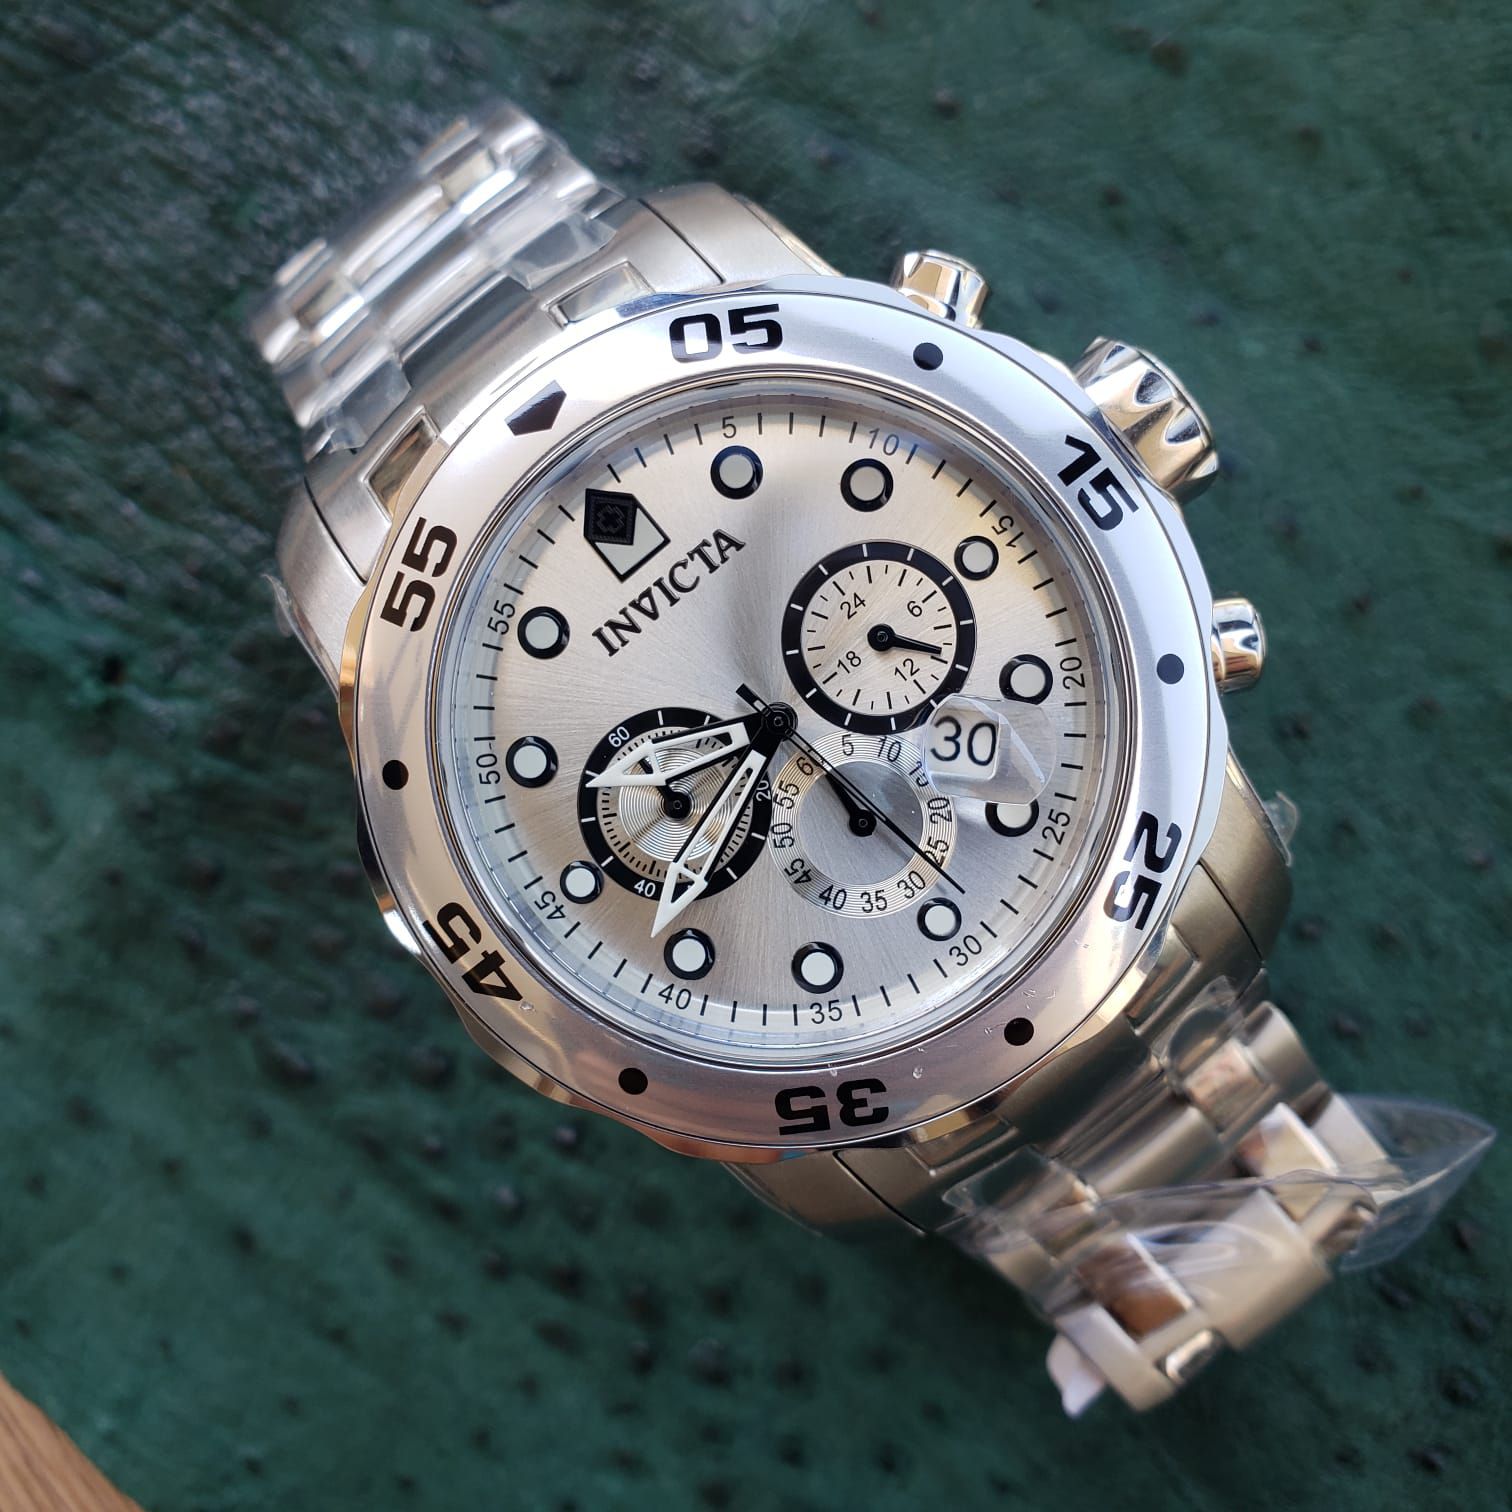 Relógio Masculino Invicta Pro Diver 0071 - Altarelojoria relógios originais  invicta orient casio e muito mais.